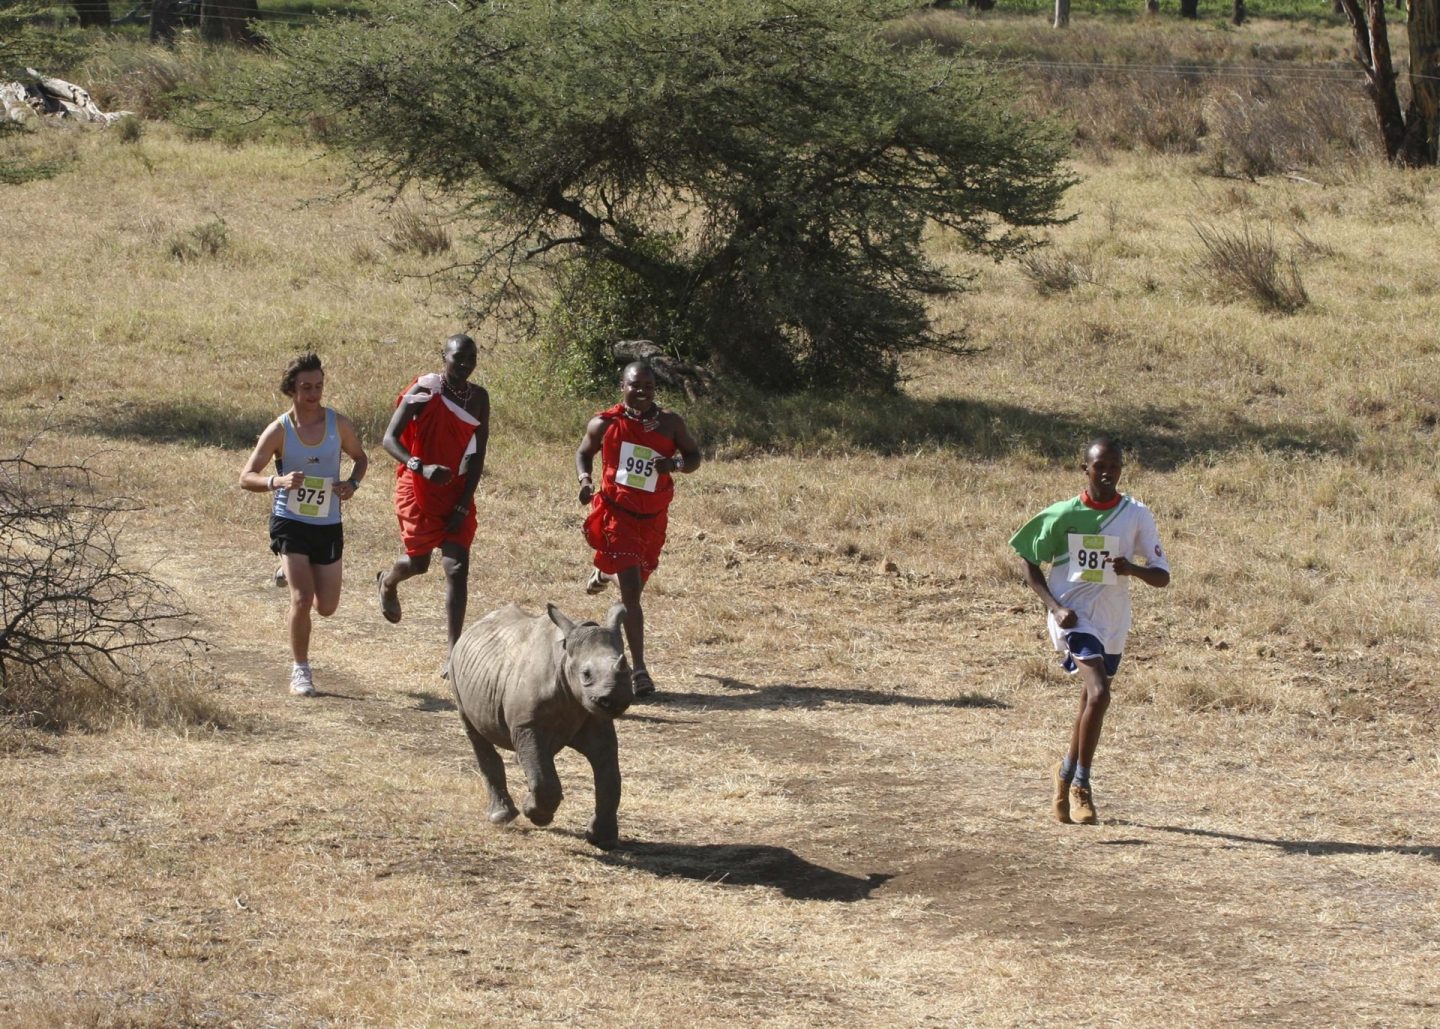 Safaricom Marathon Runners and Rhino